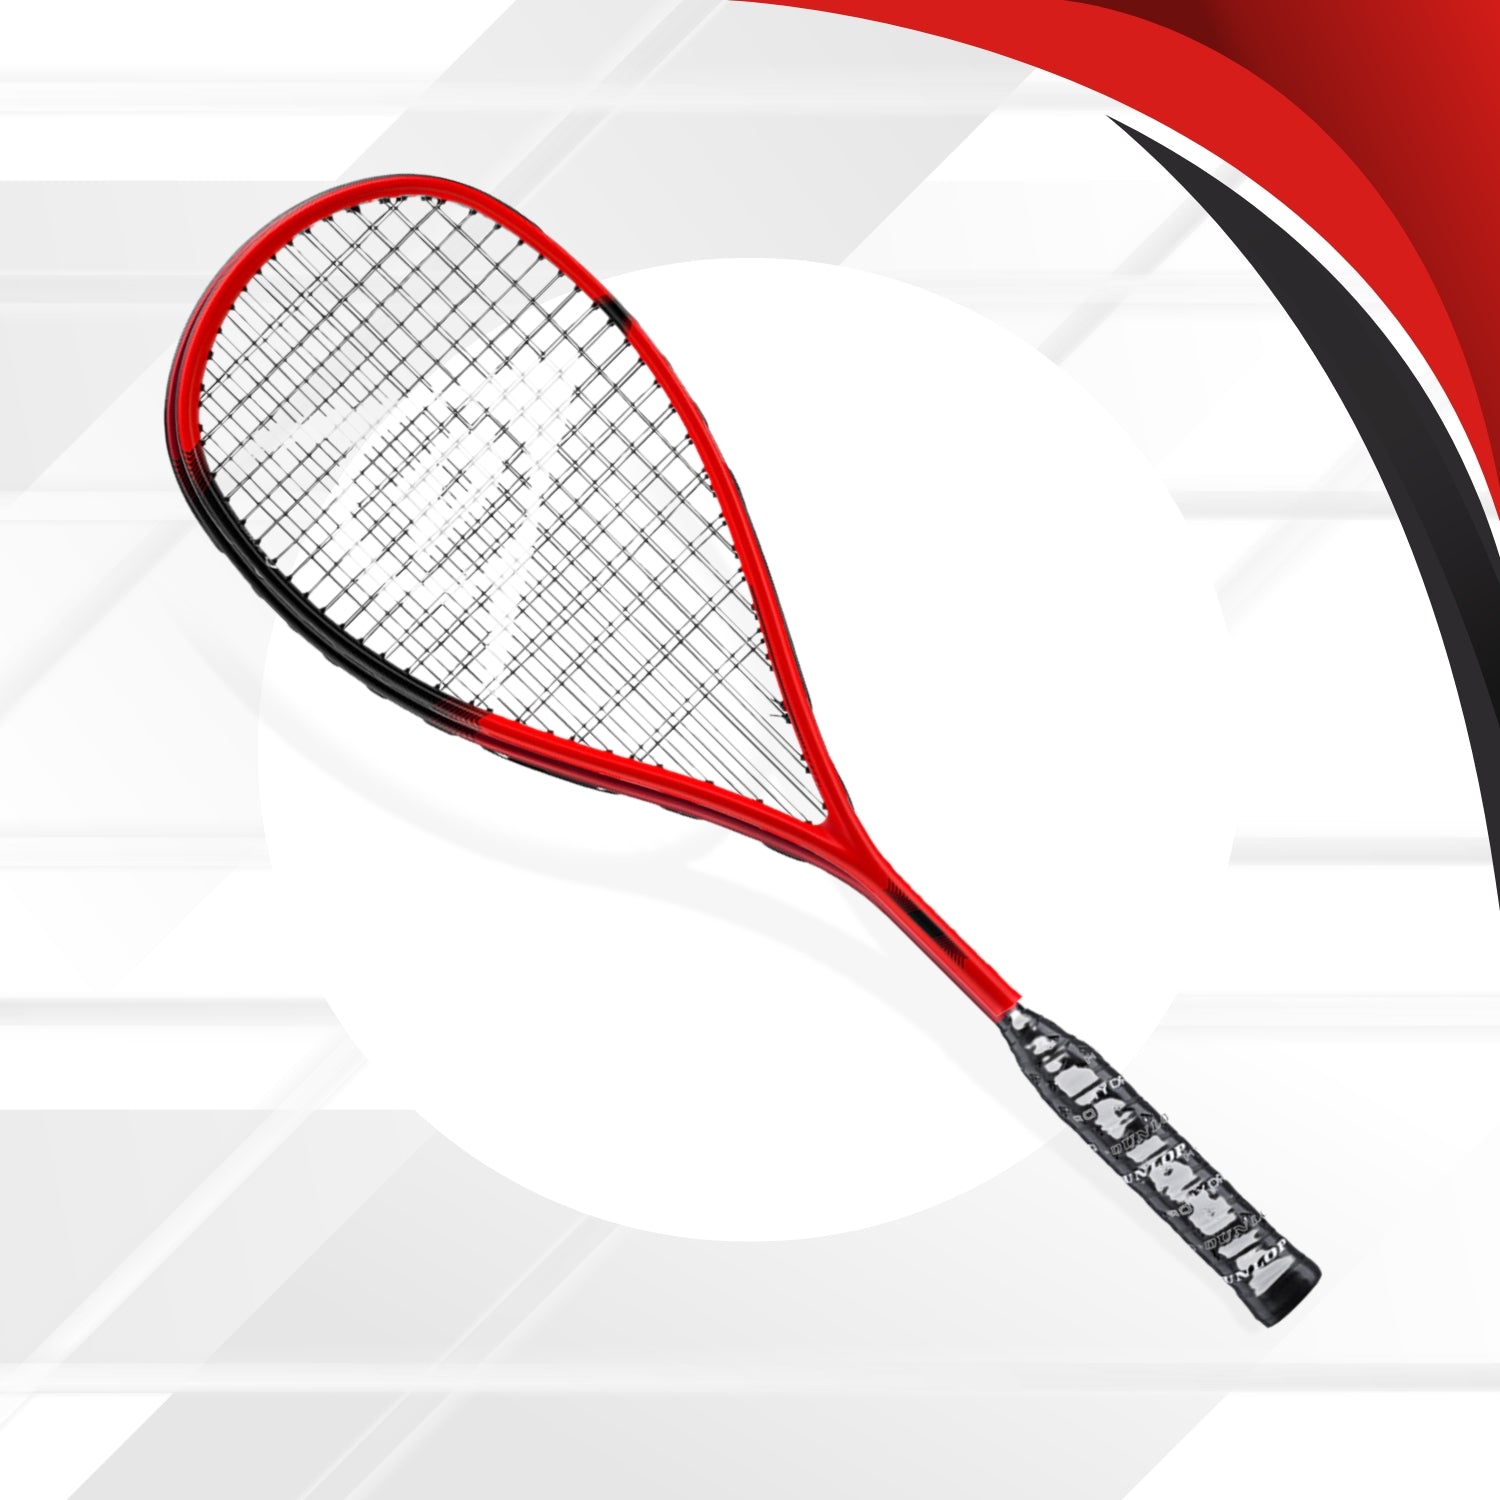 Dunlop Soniccore Revelation Pro Lite HL Squash Racquet - Best Price online Prokicksports.com